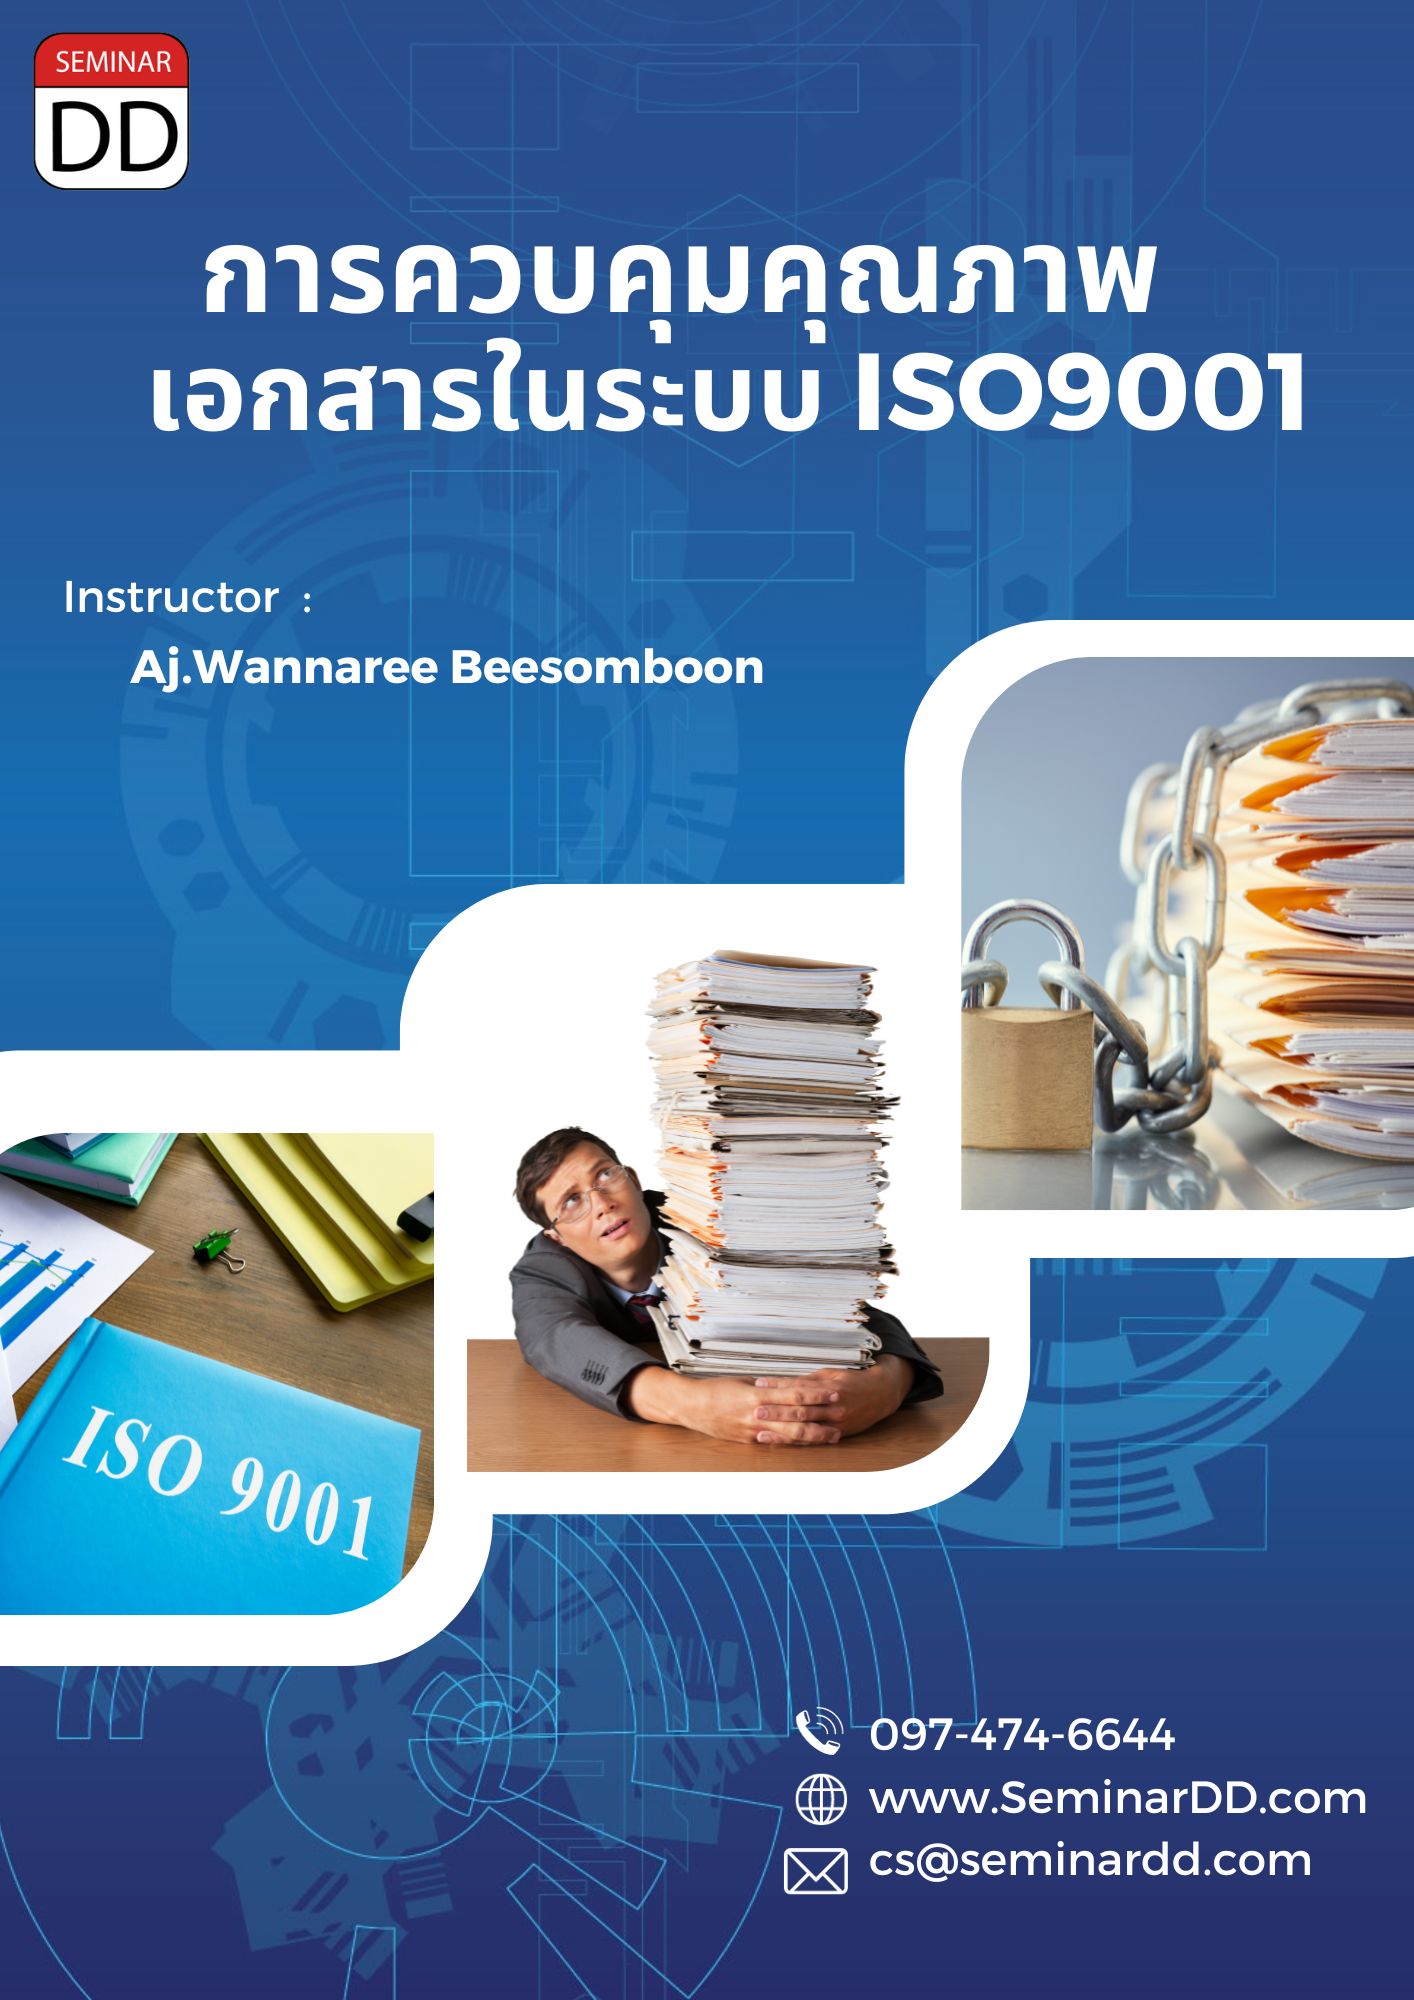 หลักสูตร การควบคุมคุณภาพเอกสารในระบบ ISO9001 สำหรับ DCC